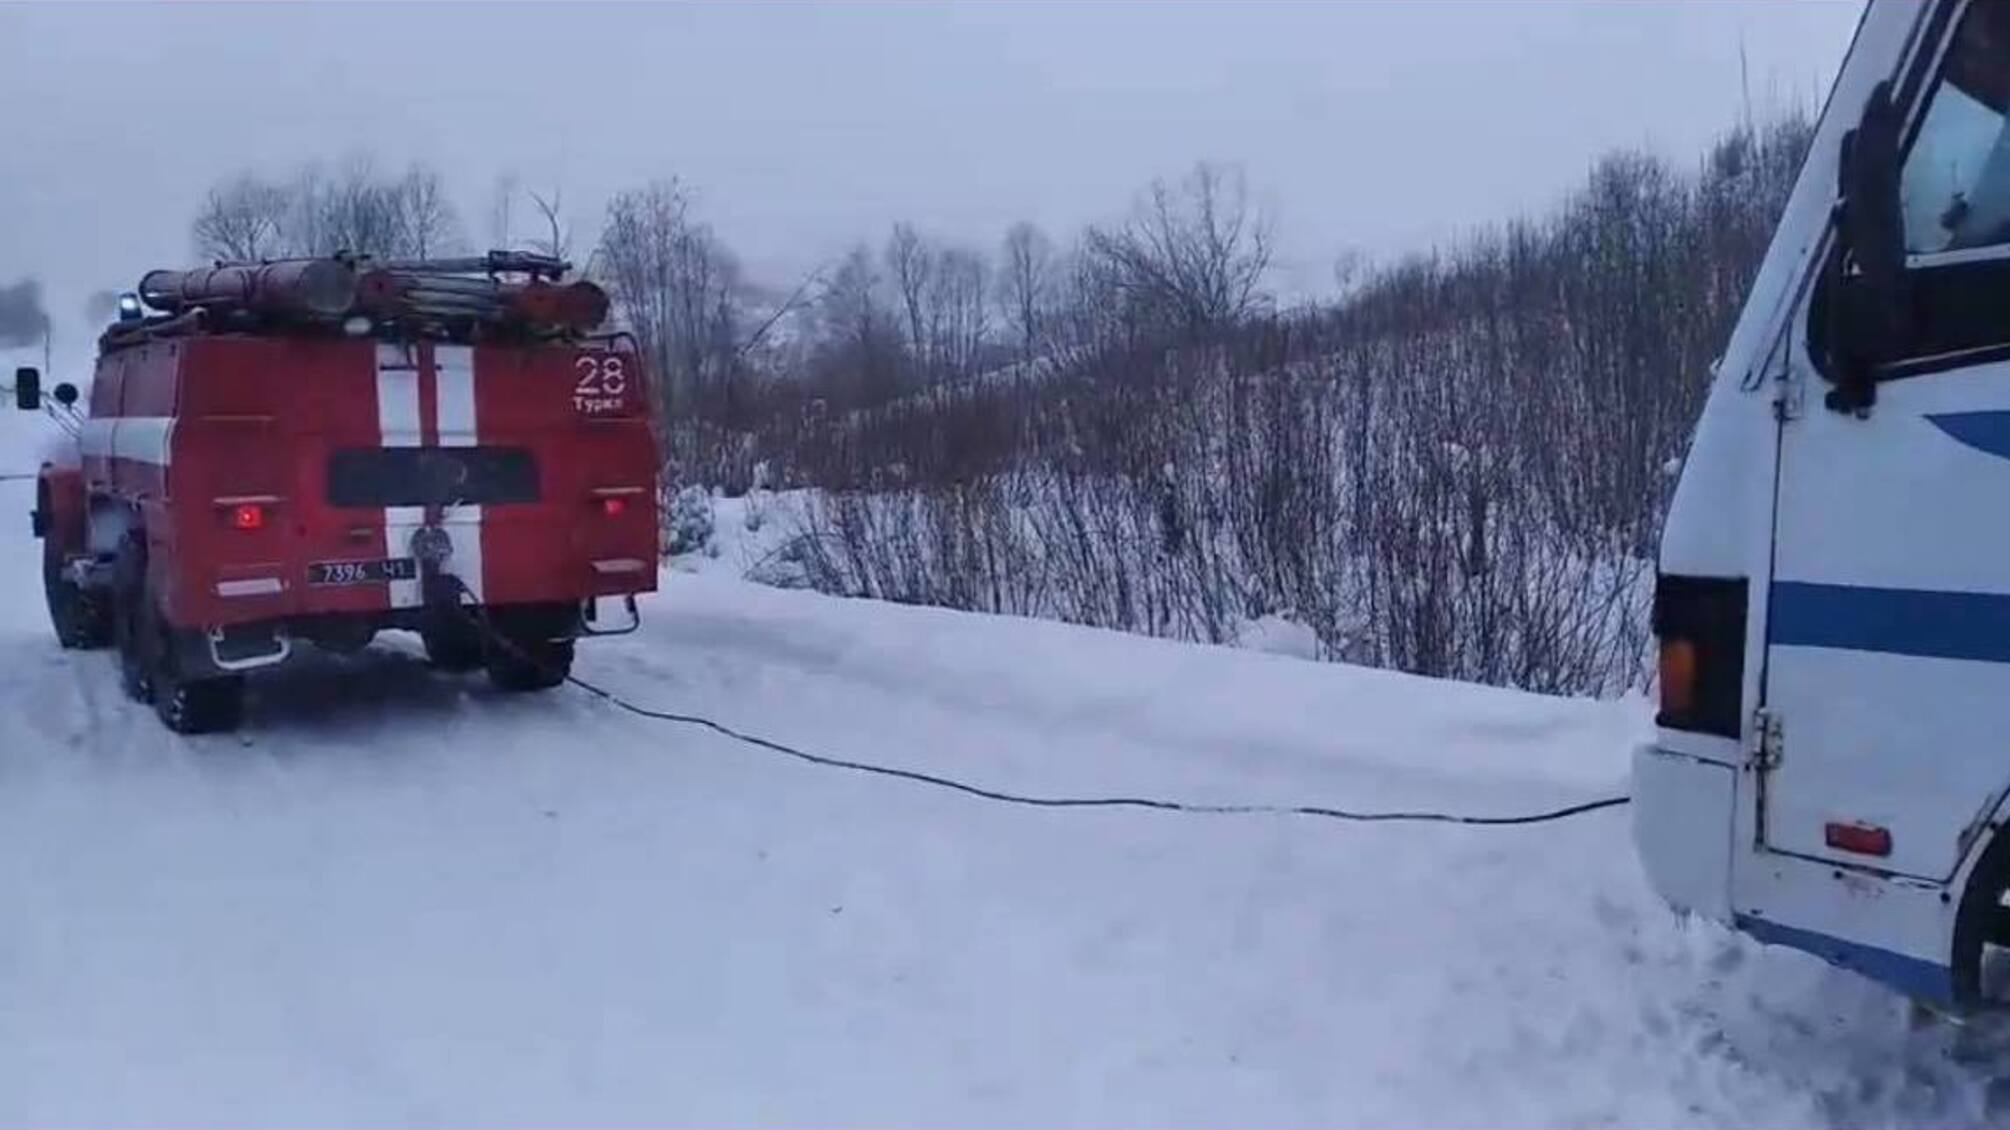 Львівська область: за минулу добу із снігового полону рятувальники звільнили 3 автомобілі, у яких перебувало 20 осіб